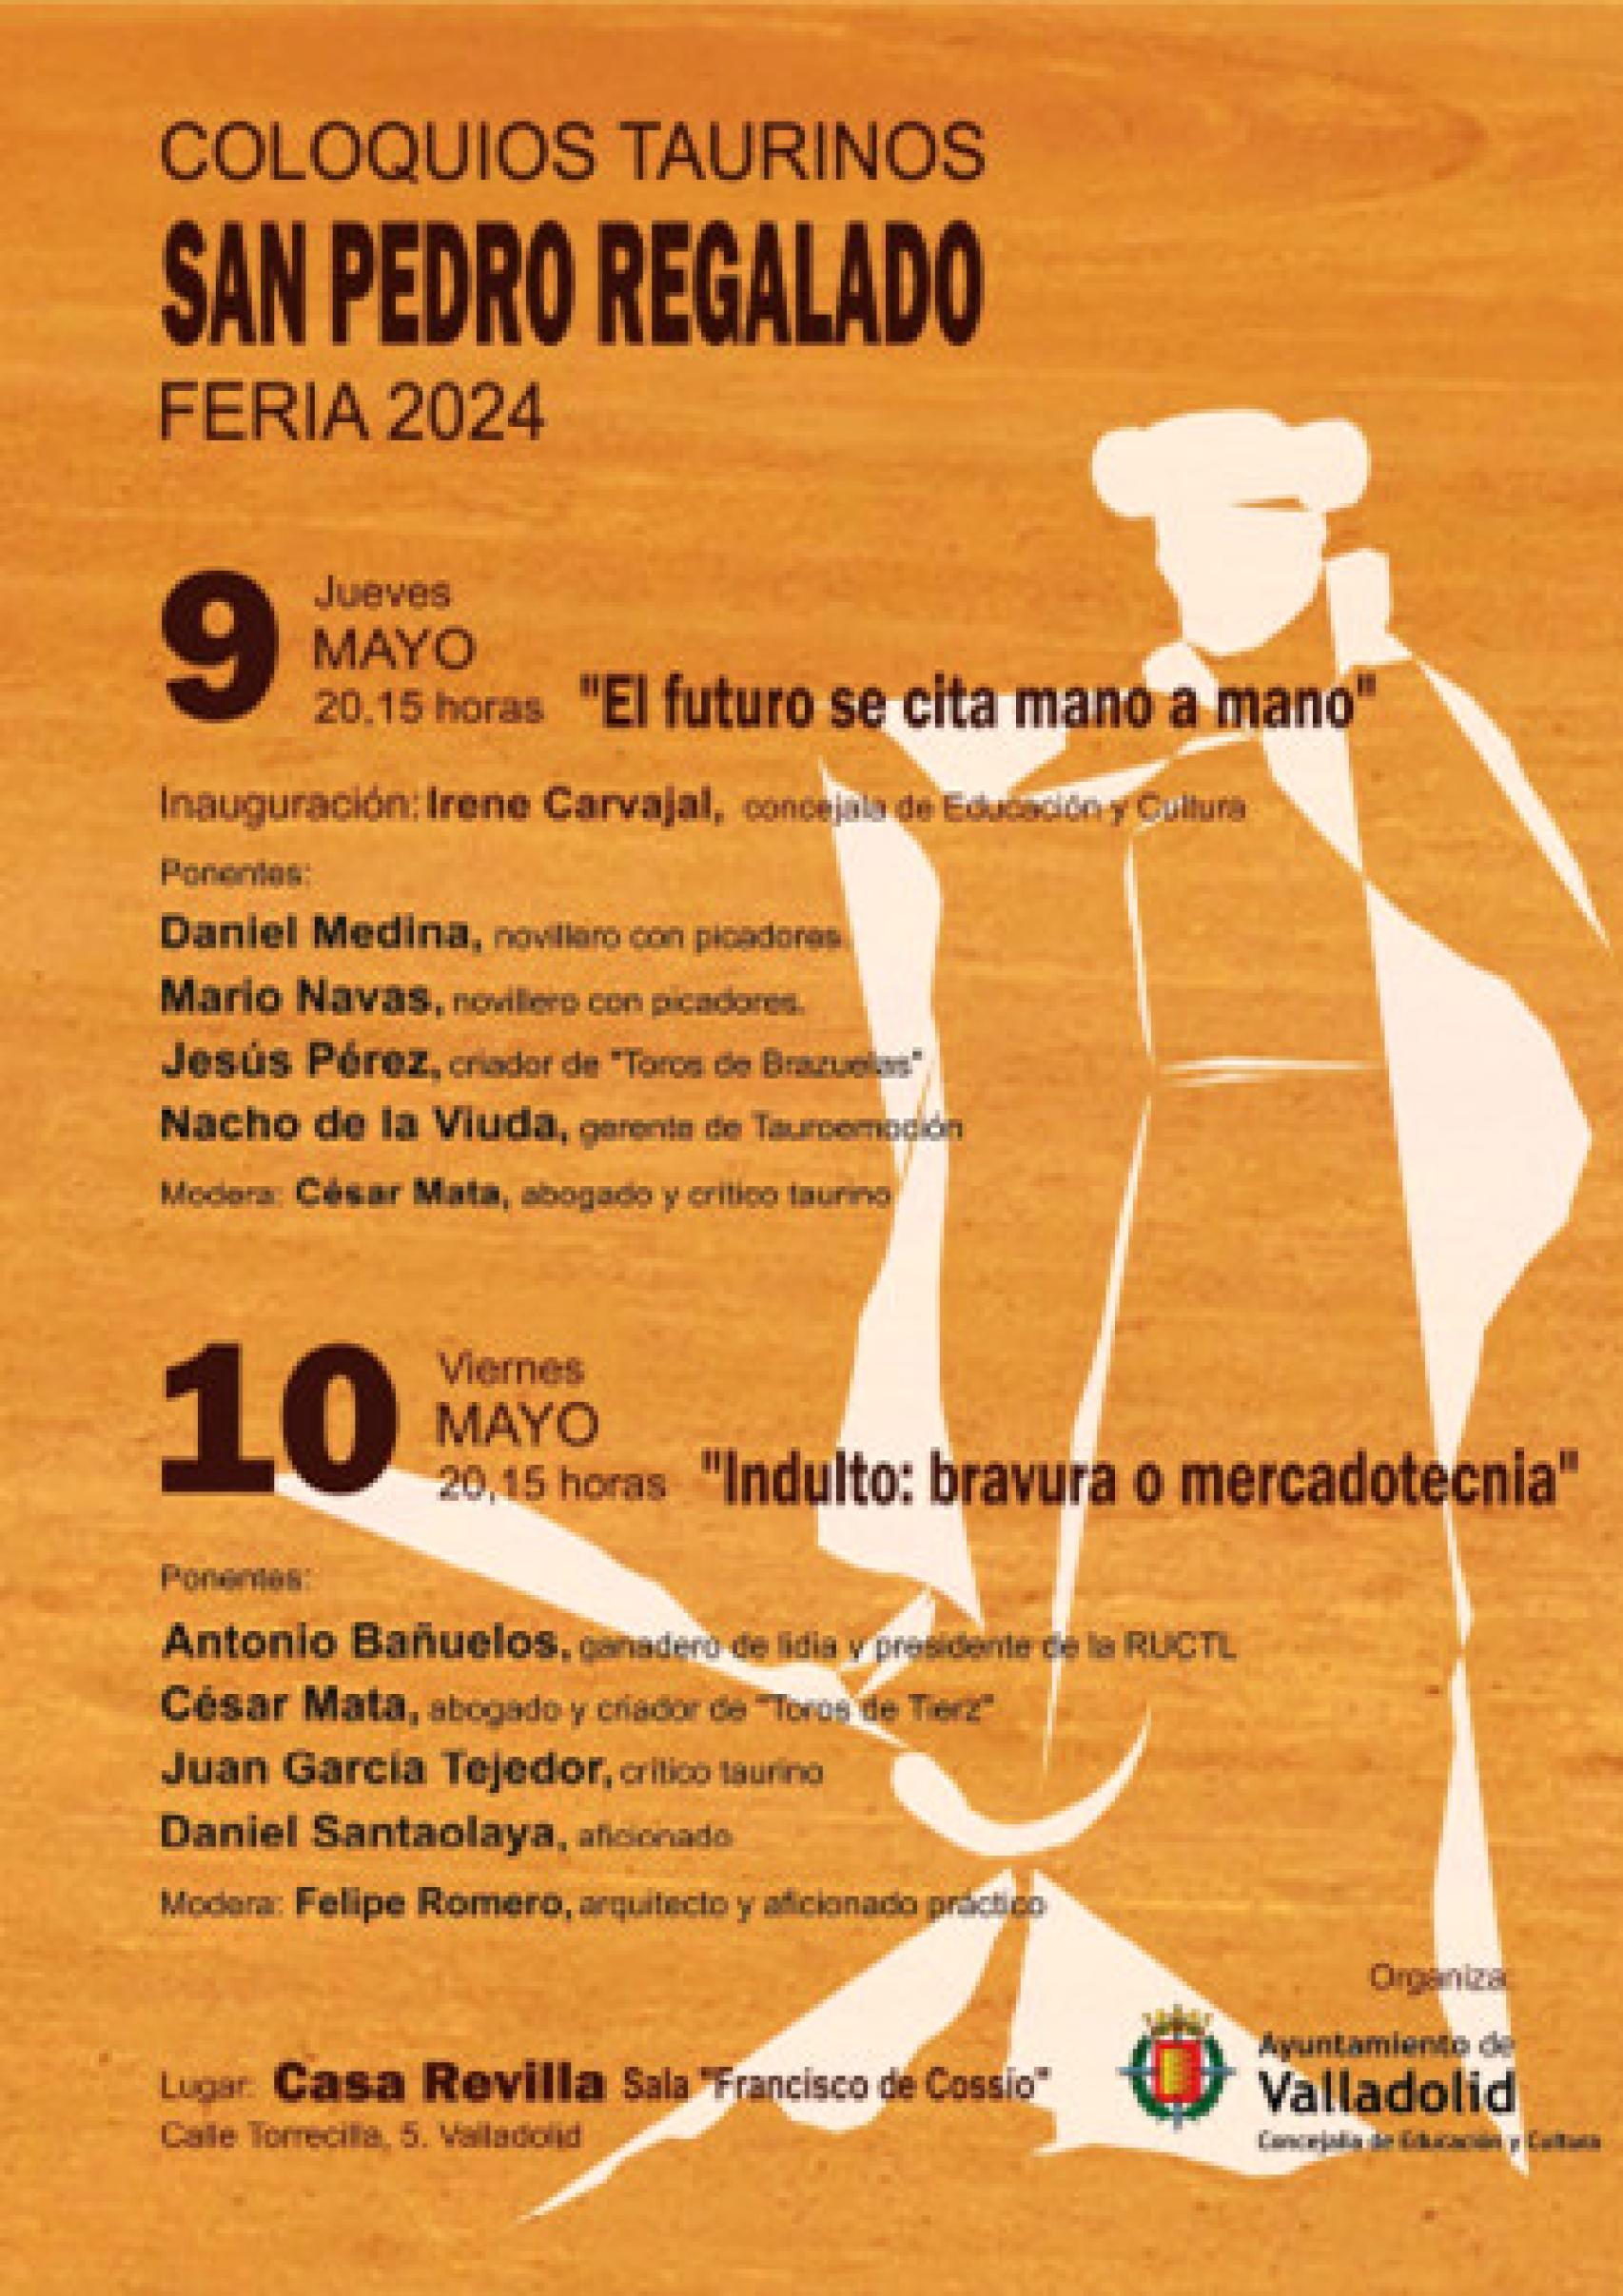 Cartel de los coloquios taurinos en la Feria de San Pedro Regalado 2024